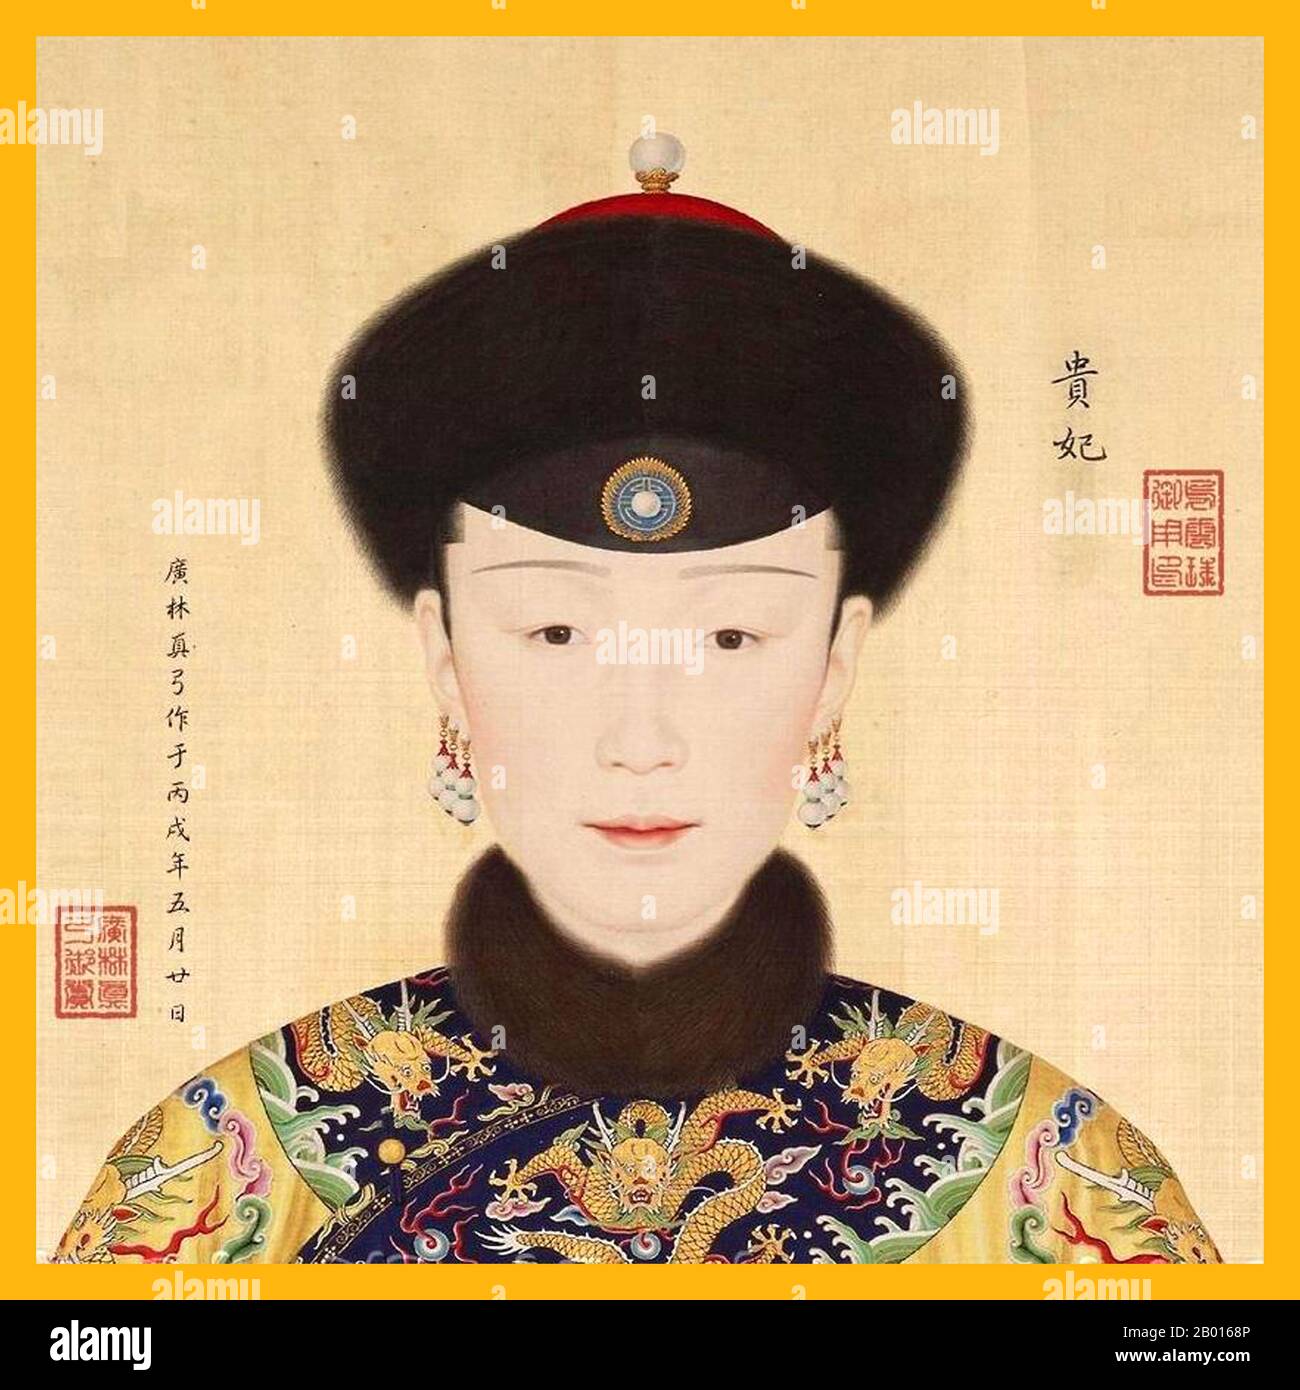 China: Kaiserliche Edle Gemahlin Hui Xian (1711. - 25. Februar 1745), Konkubine des Qianlong-Imperators. Handscroll-Gemälde von Giuseppe Castiglione (1688-1766), 18. Jahrhundert. Der kaiserliche Edle Consort Huixian stammte aus dem mandschurischen Gaogiya-Clan mit gelbem Banner. Ihr Vater war der Gelehrte der Qing Dynastie Gao bin. Lady Gaogiya wurde während der Herrschaft von Kaiser Yongzheng eine kaiserliche Gemahlin des Qianlong-Imperators. Als Kaiser Qianlong 1735 auf den Thron stieg, erhielt Lady Gaogiya den Titel „Edler Consort“. Lady Gaogiya starb im zehnten Jahr der Herrschaft von Kaiser Qianlong. Stockfoto